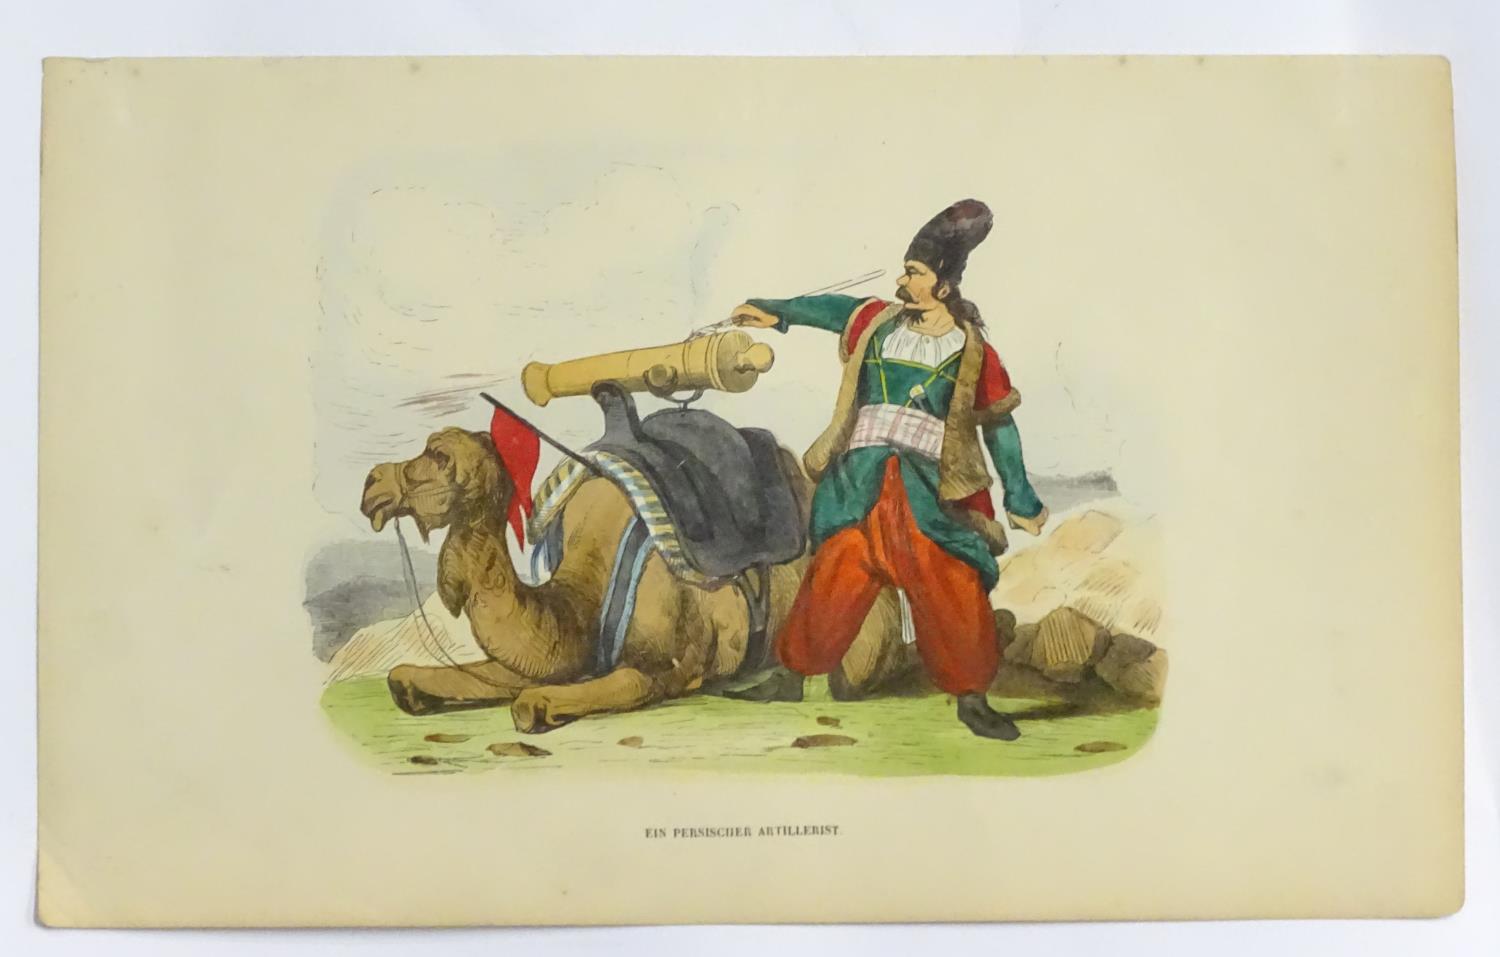 A 19thC hand coloured print entitled Ein Persischer Artillerist (A Persian Artillery Man), depicting